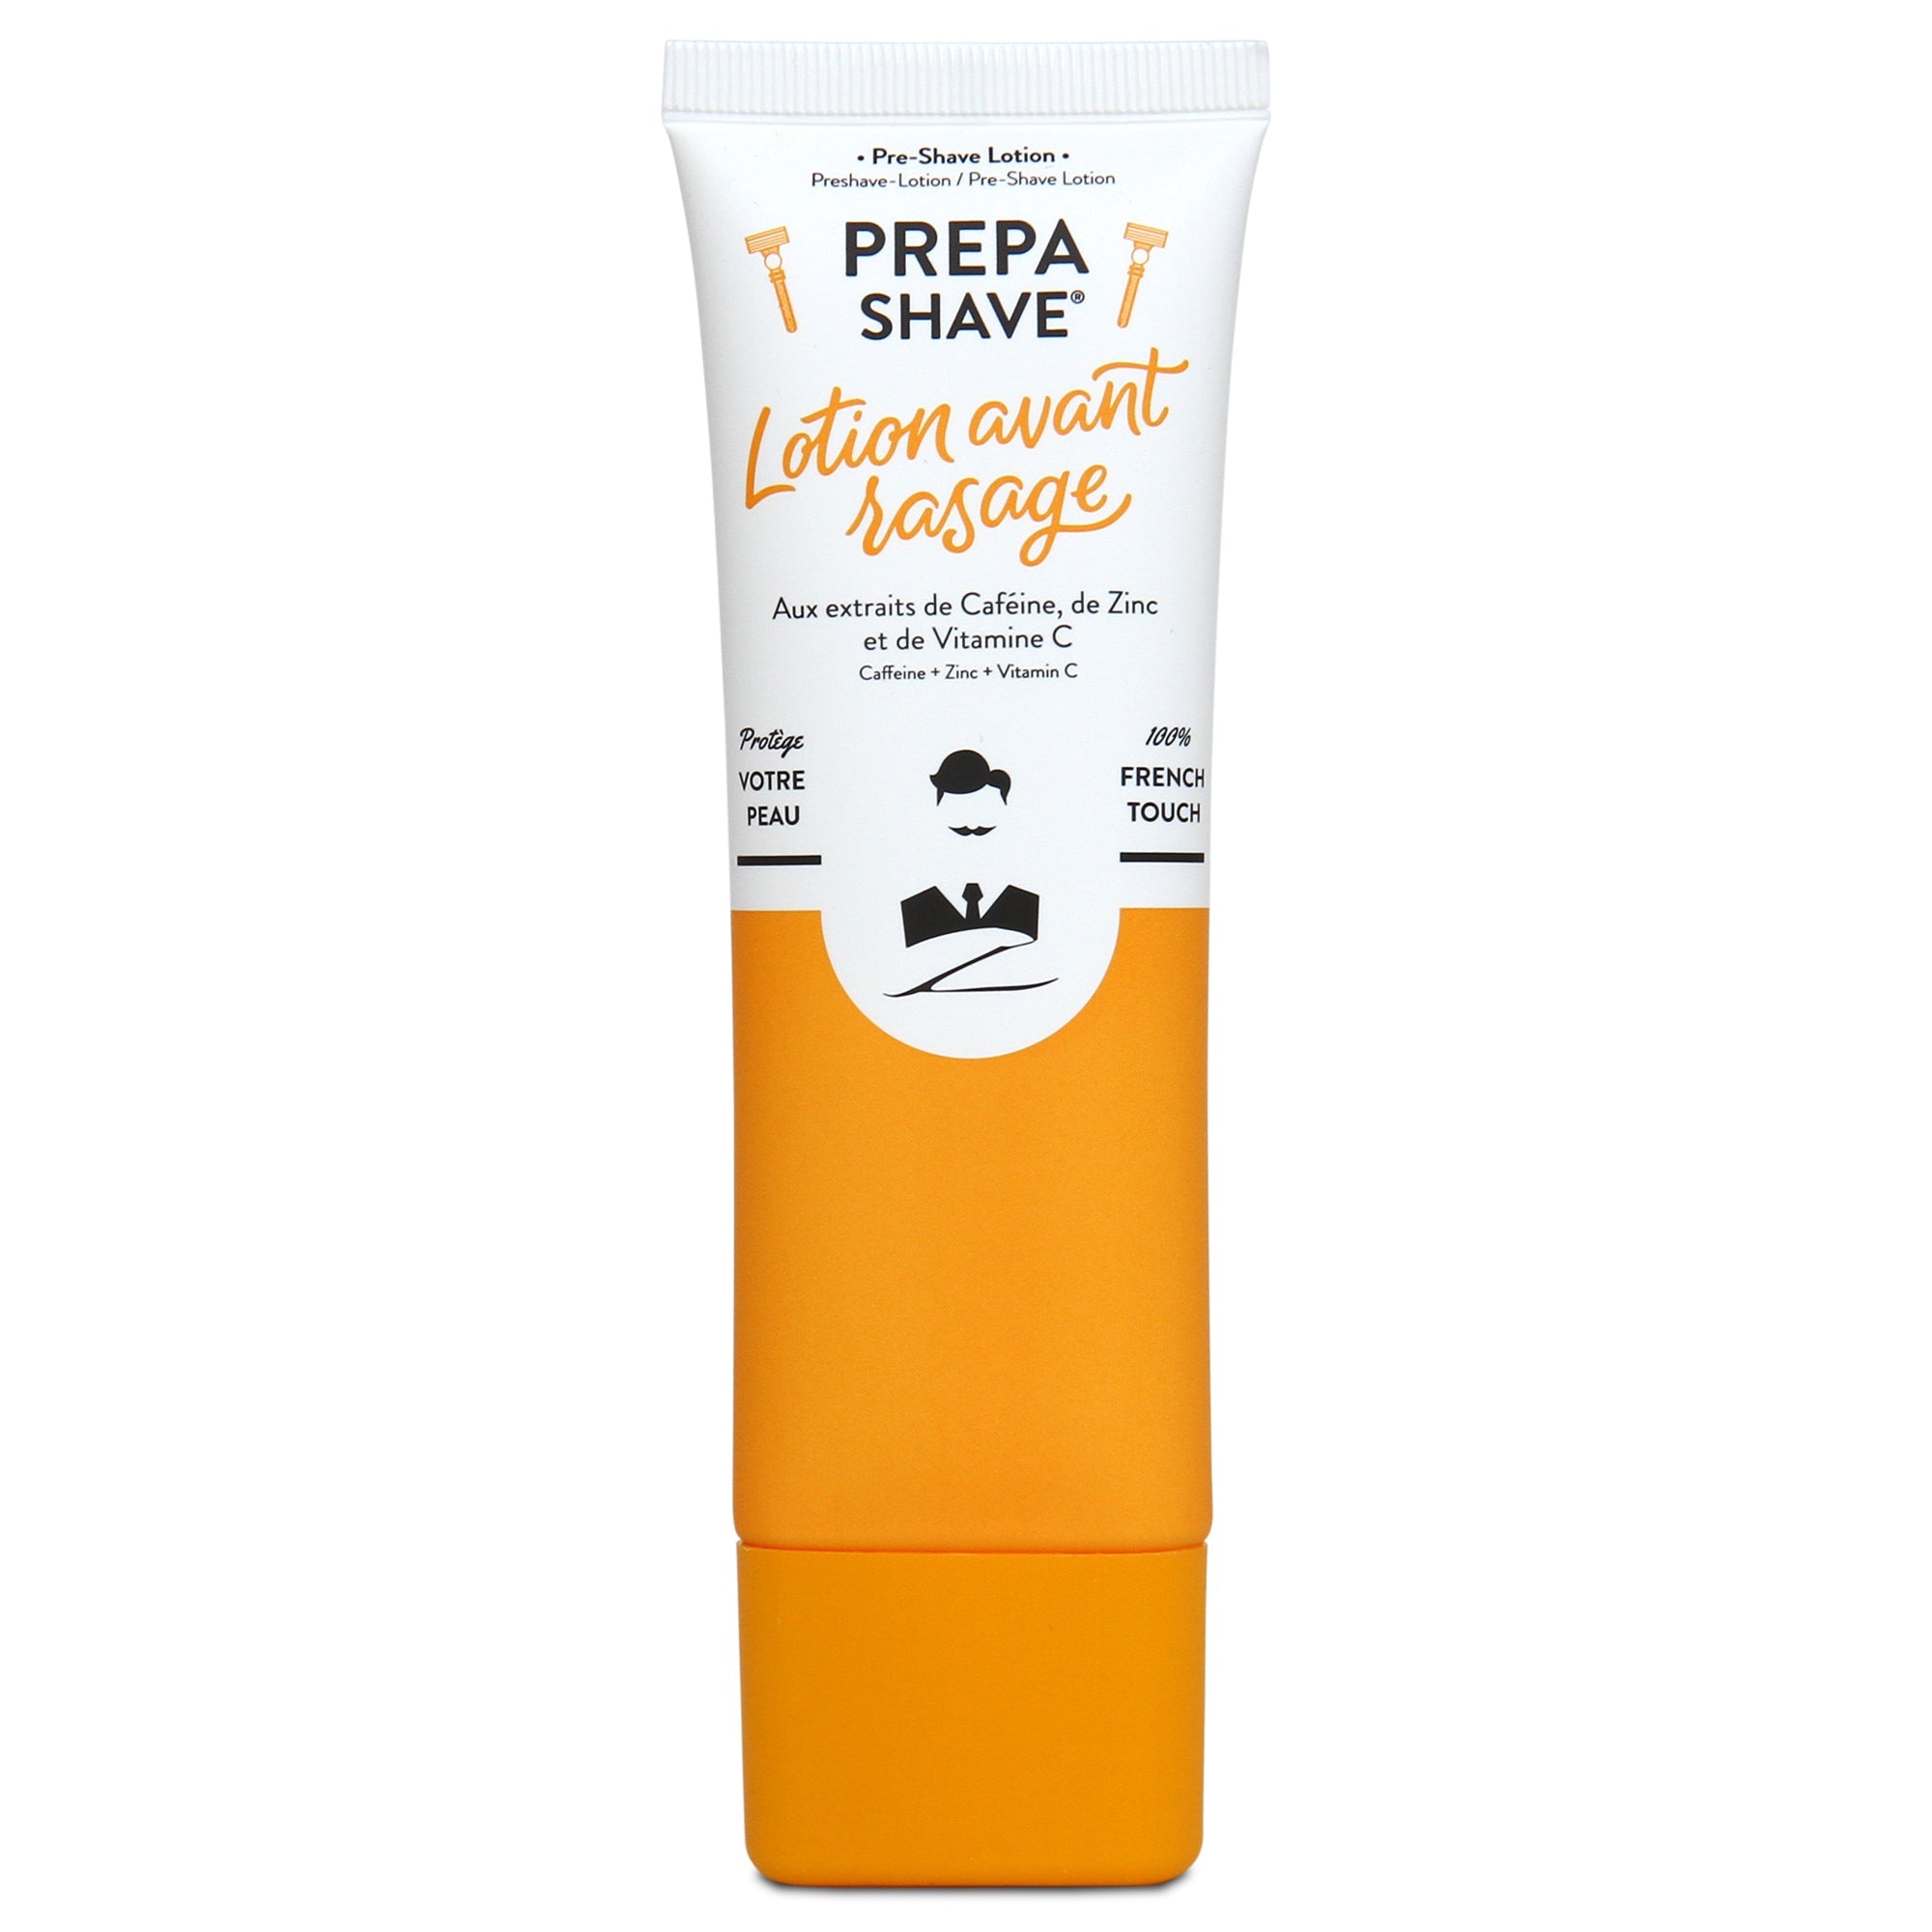 Pre-Shave Lotion | Lotion avant rasage - Monsieur Barbier